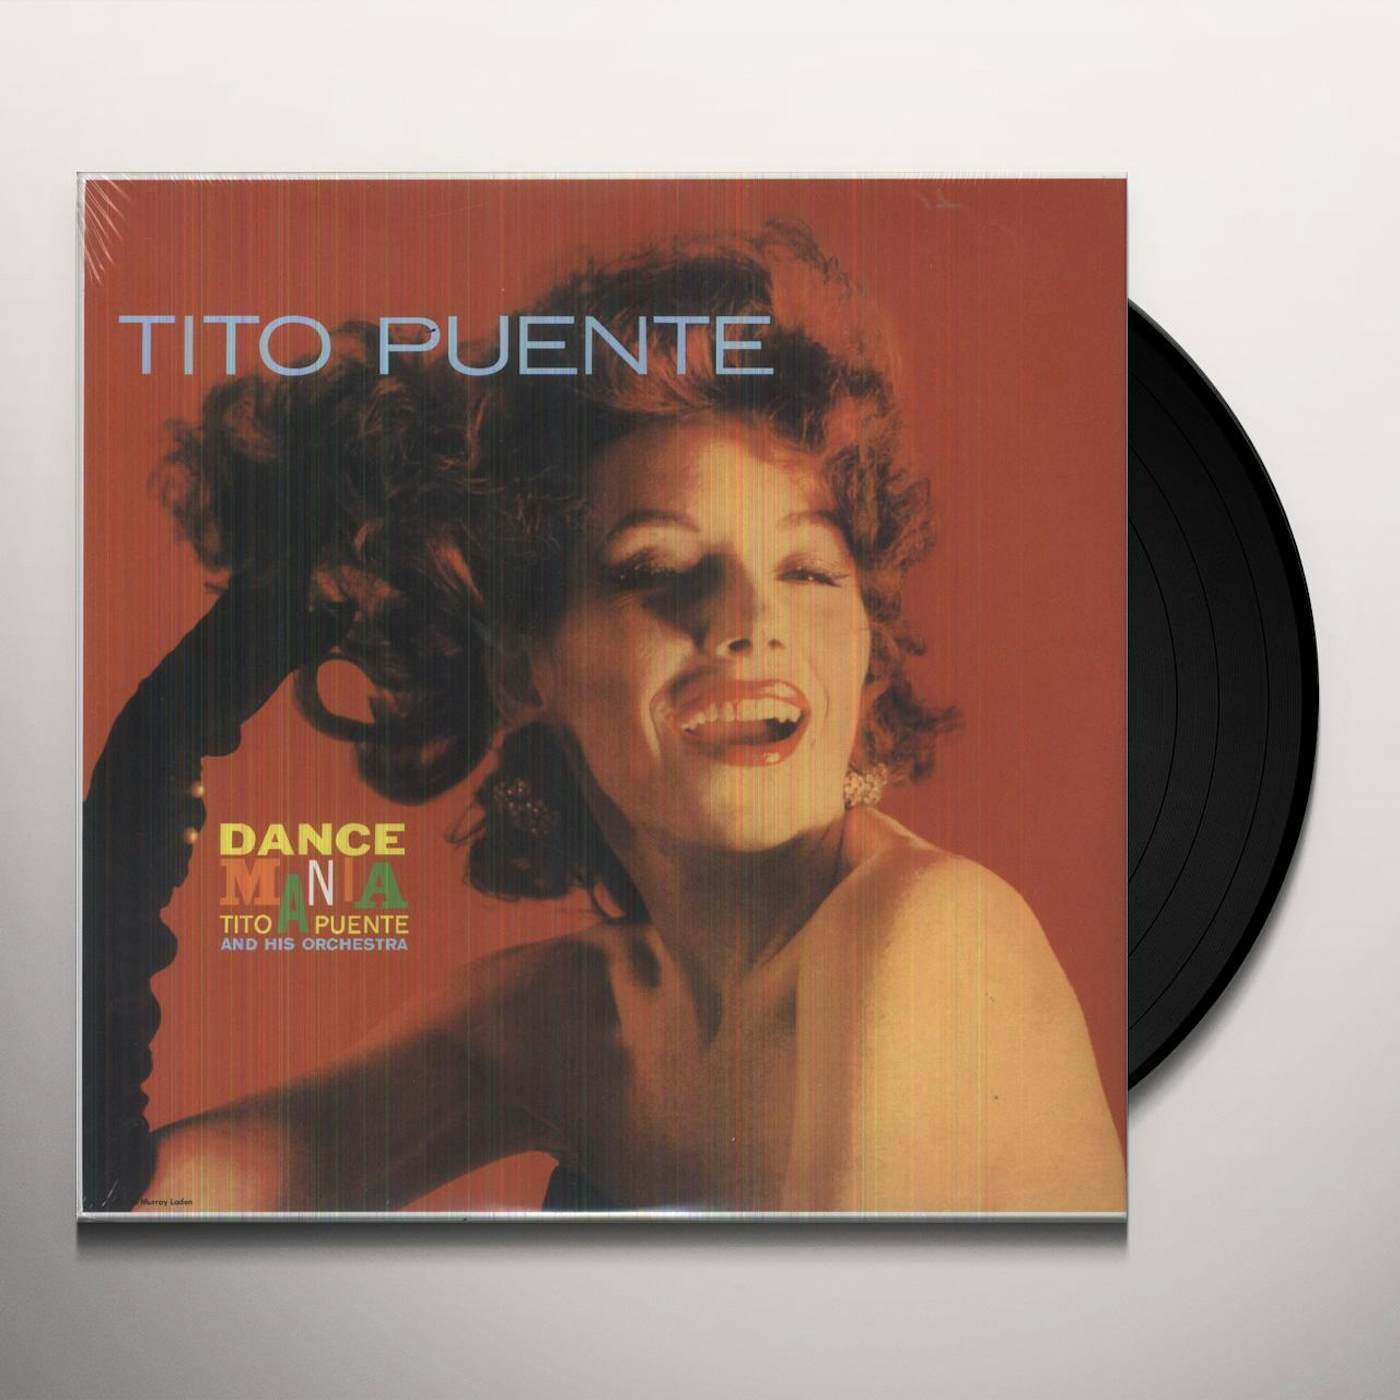 Tito Puente DANCE MANIA Vinyl Record